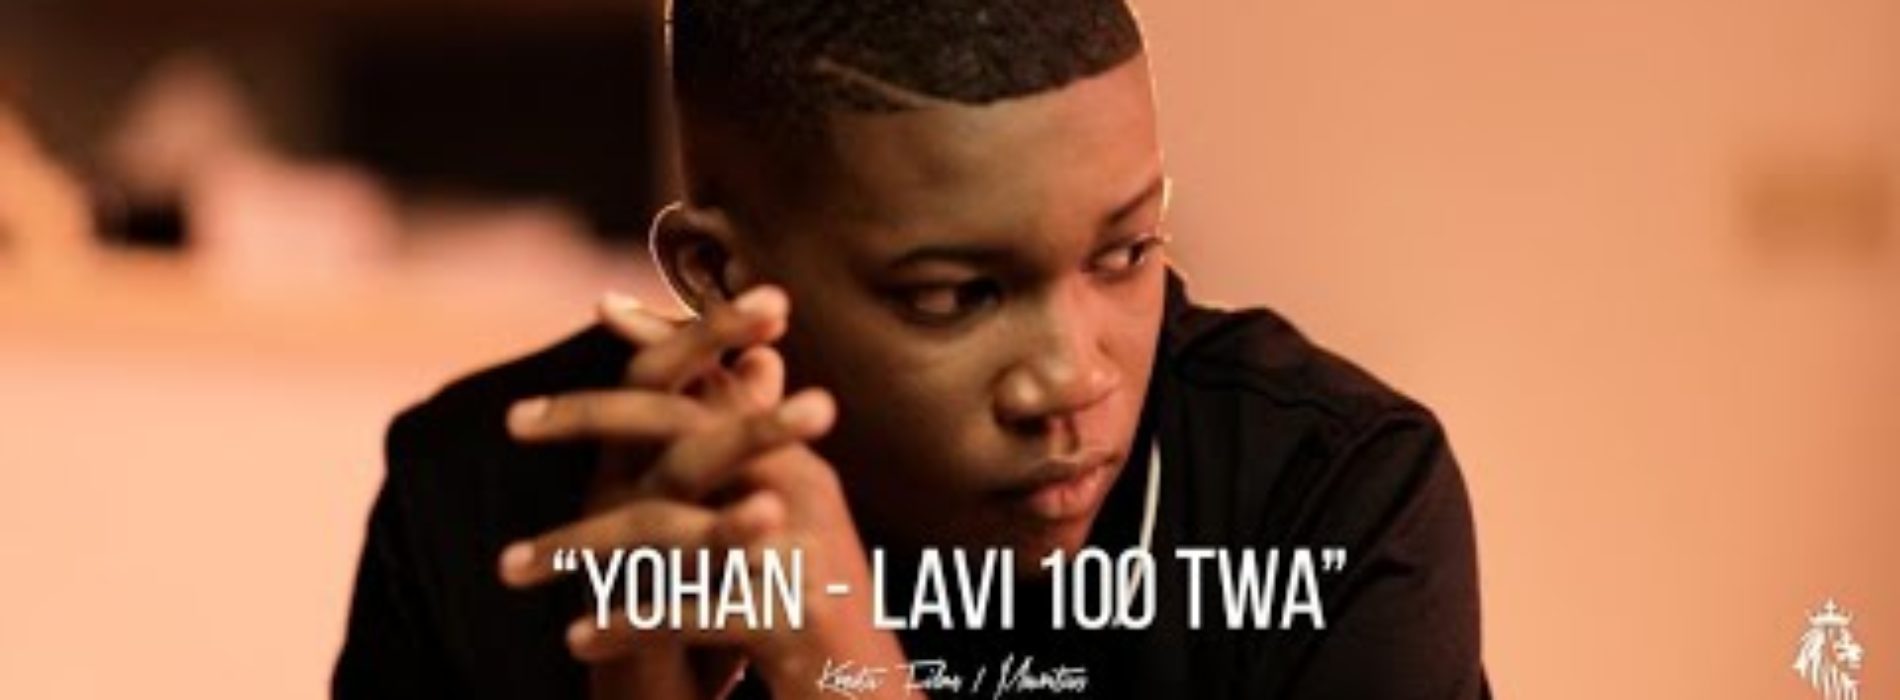 Yohan x Dj Wayn – Lavi 100 Twa [Clip Officiel] – Novembre 2020